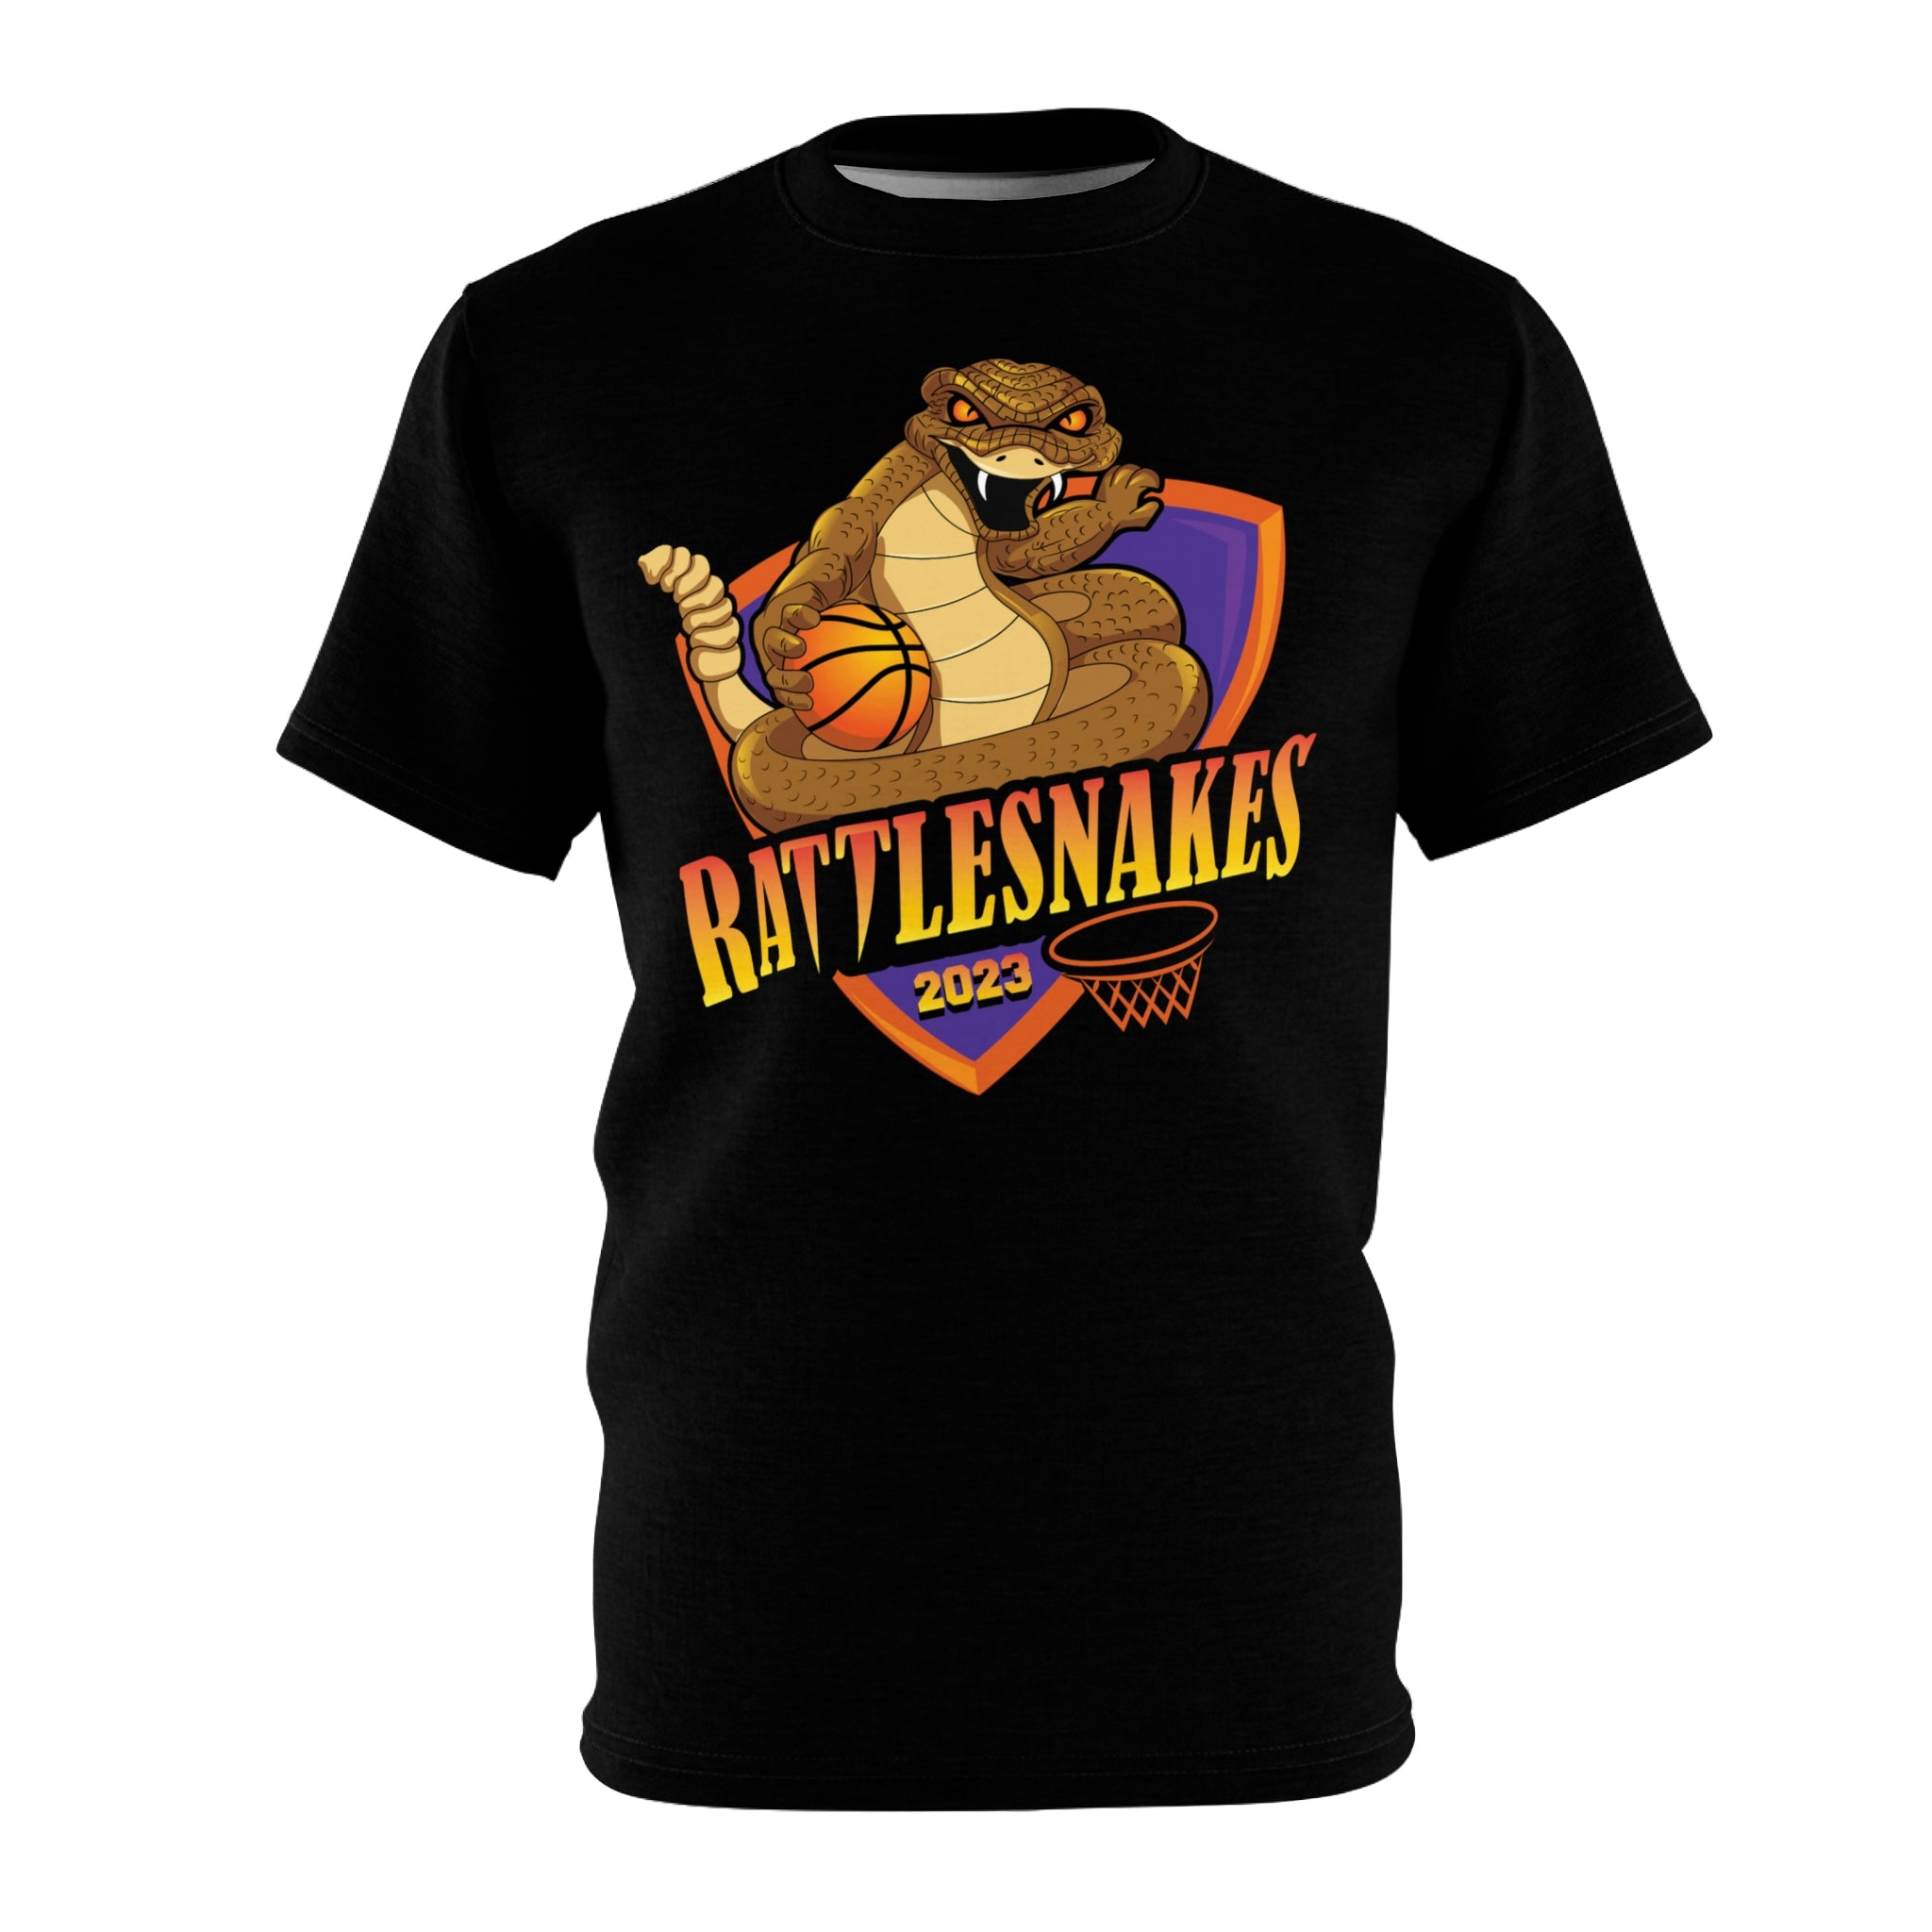 Rattlesnakes 2023 Basketball Team Shirt Black